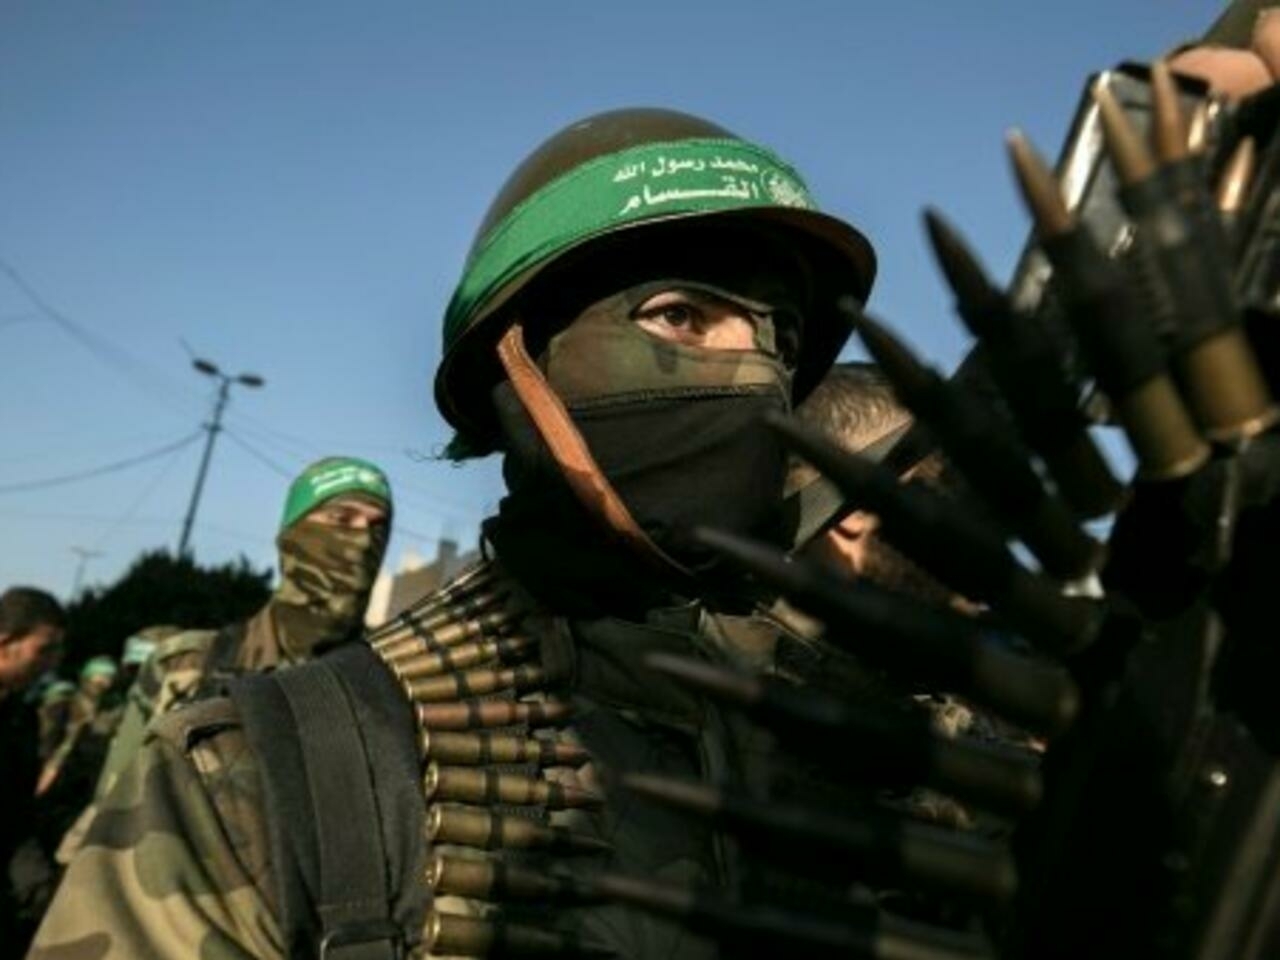 تتحجج الحكومة البريطانية باتخاذ هذا القرار ضد حماس في إطار "محاربة معاداة السامية" (أ ف ب)